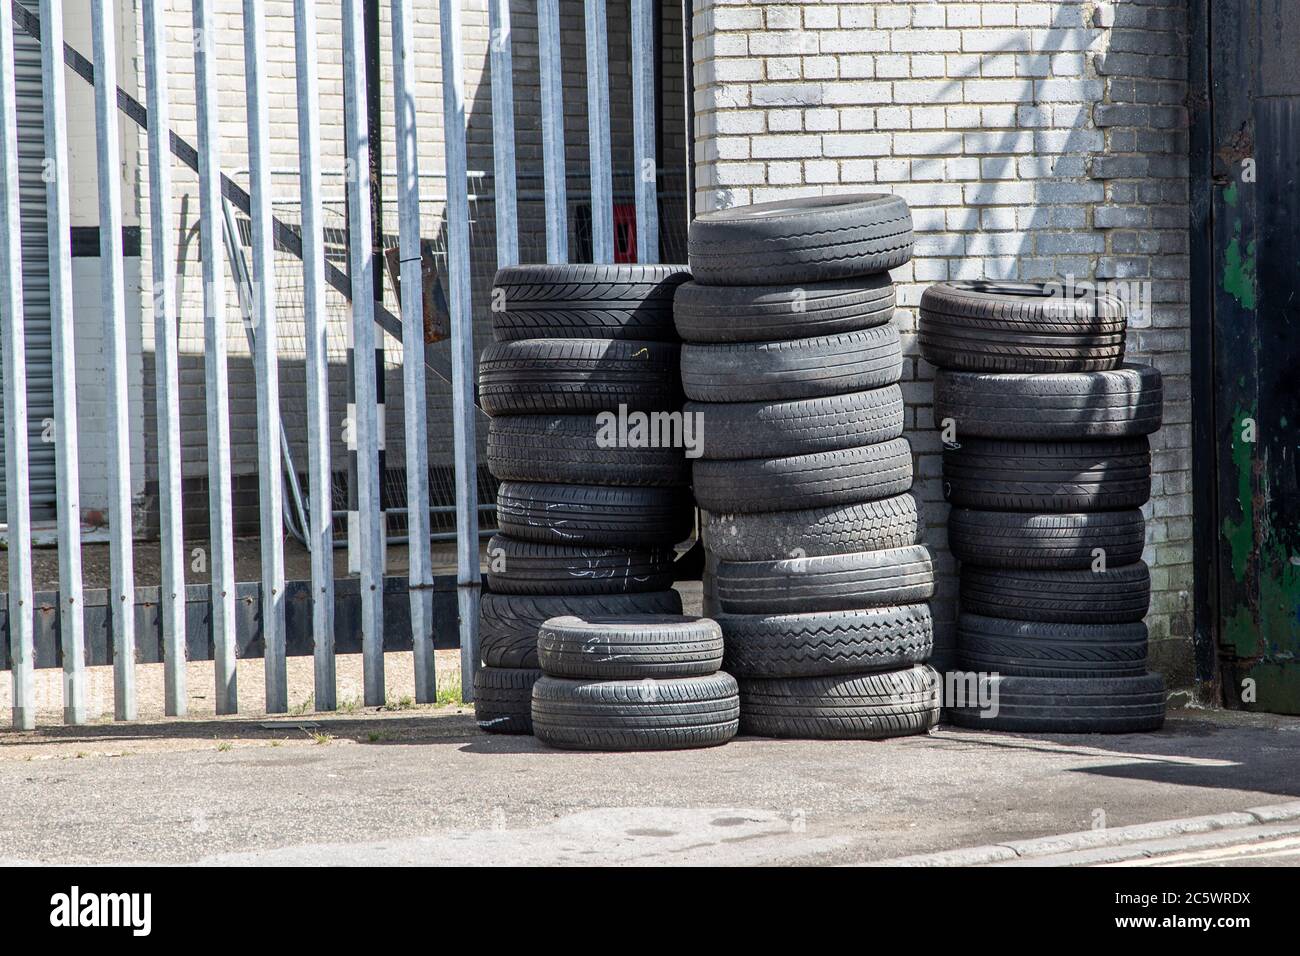 Gebrauchte Autoreifen oder Reifen übereinander gestapelt außerhalb einer  Garage oder Werkstatt Stockfotografie - Alamy